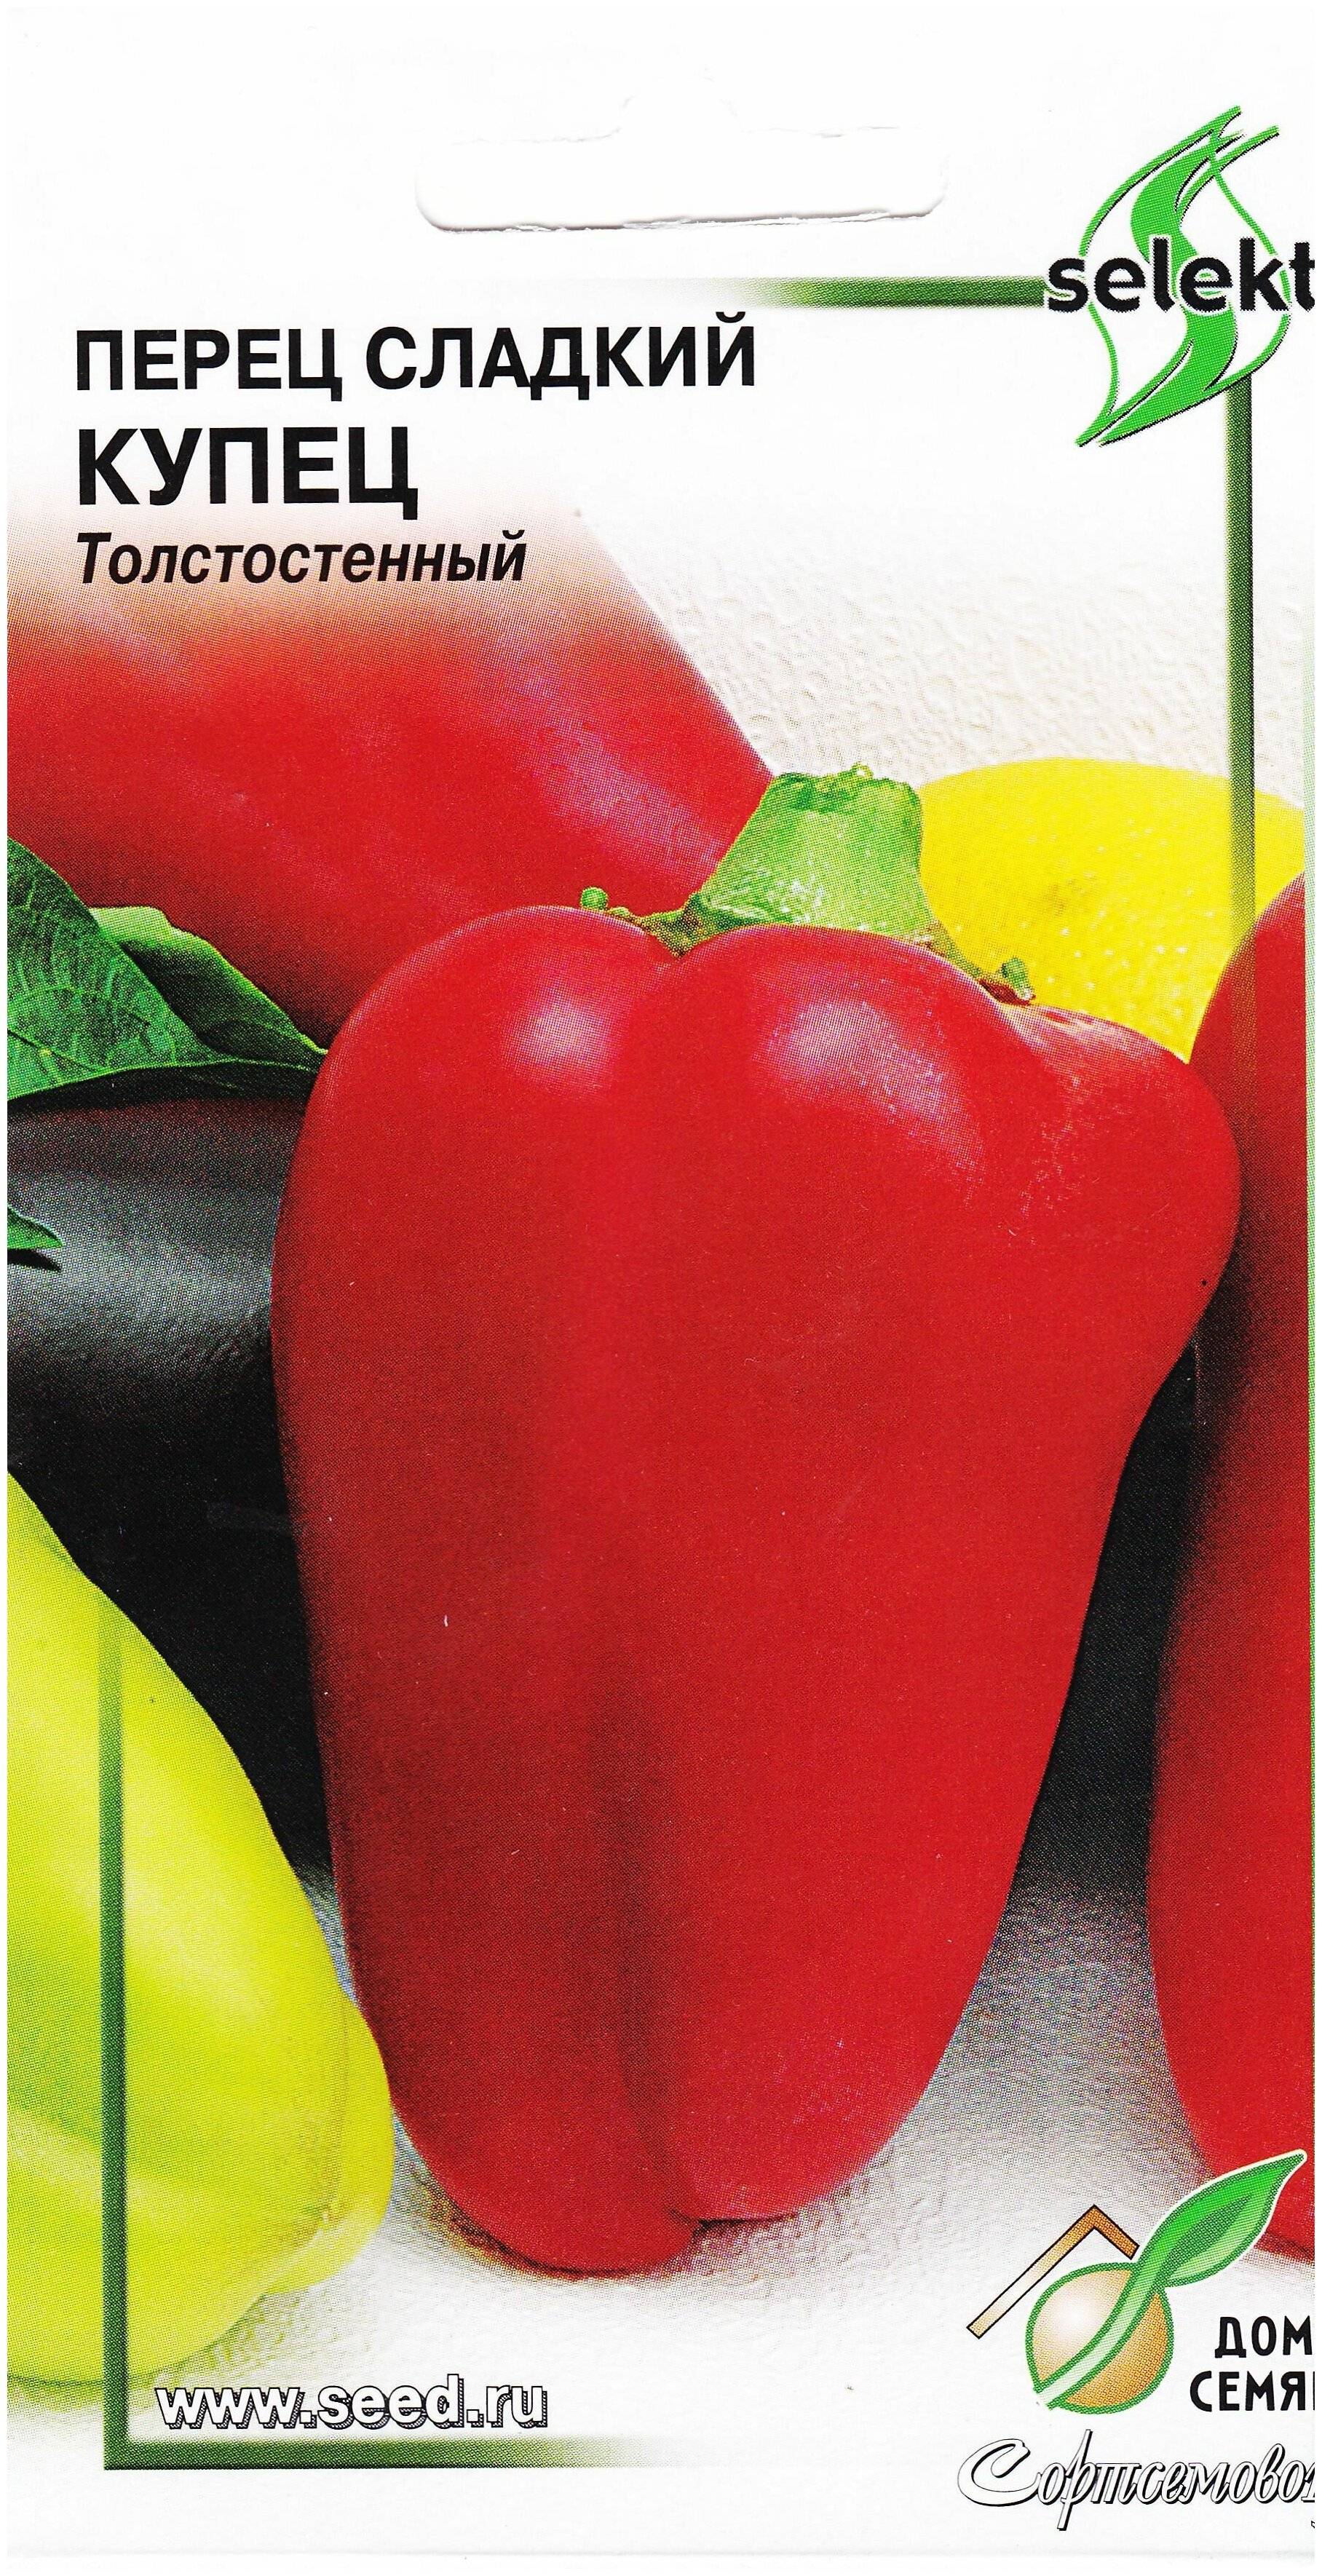 Перец купец (сладкий): описание красного болгарского сорта и характеристика, фото куста в высоту, отзывы об урожайности, посев и уход